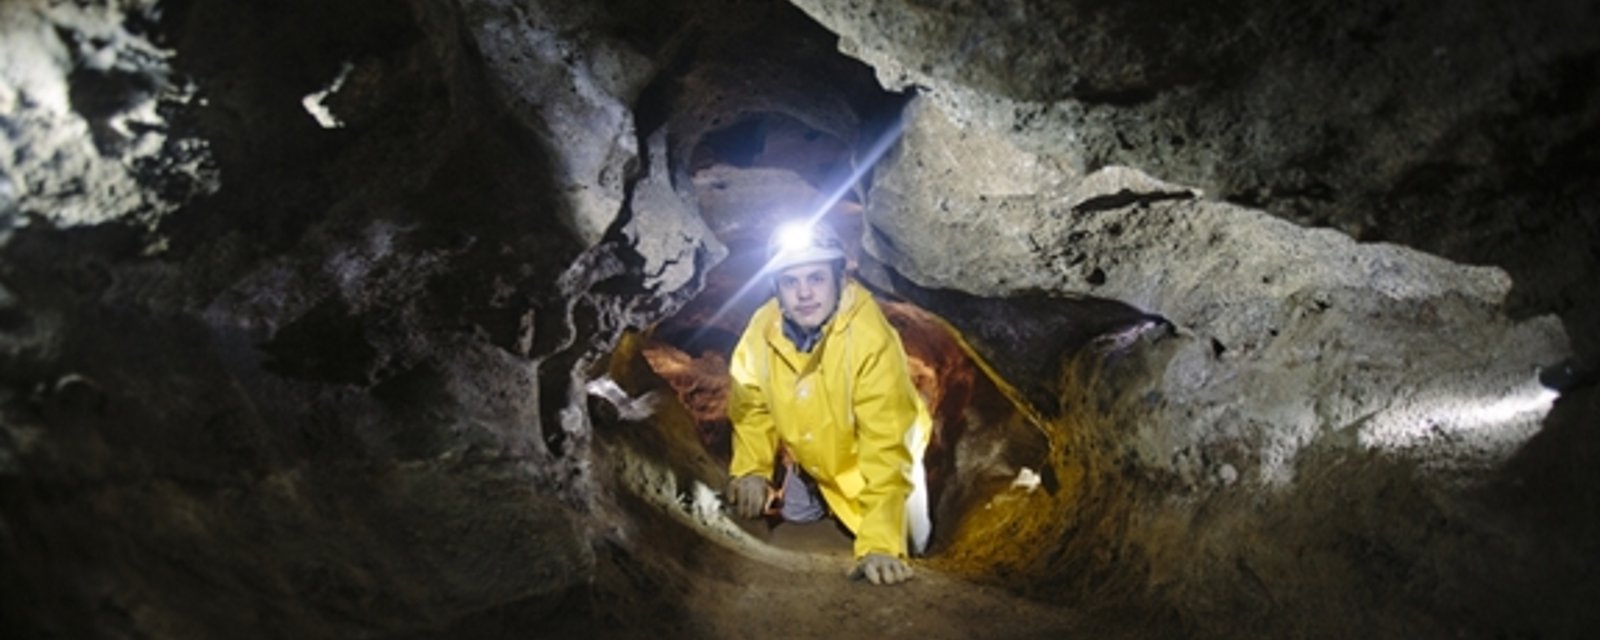 À la recherche d’une expérience mémorable ? Aventurez-vous dans les galeries souterraines d’une caverne accessible ici même, au Québec !